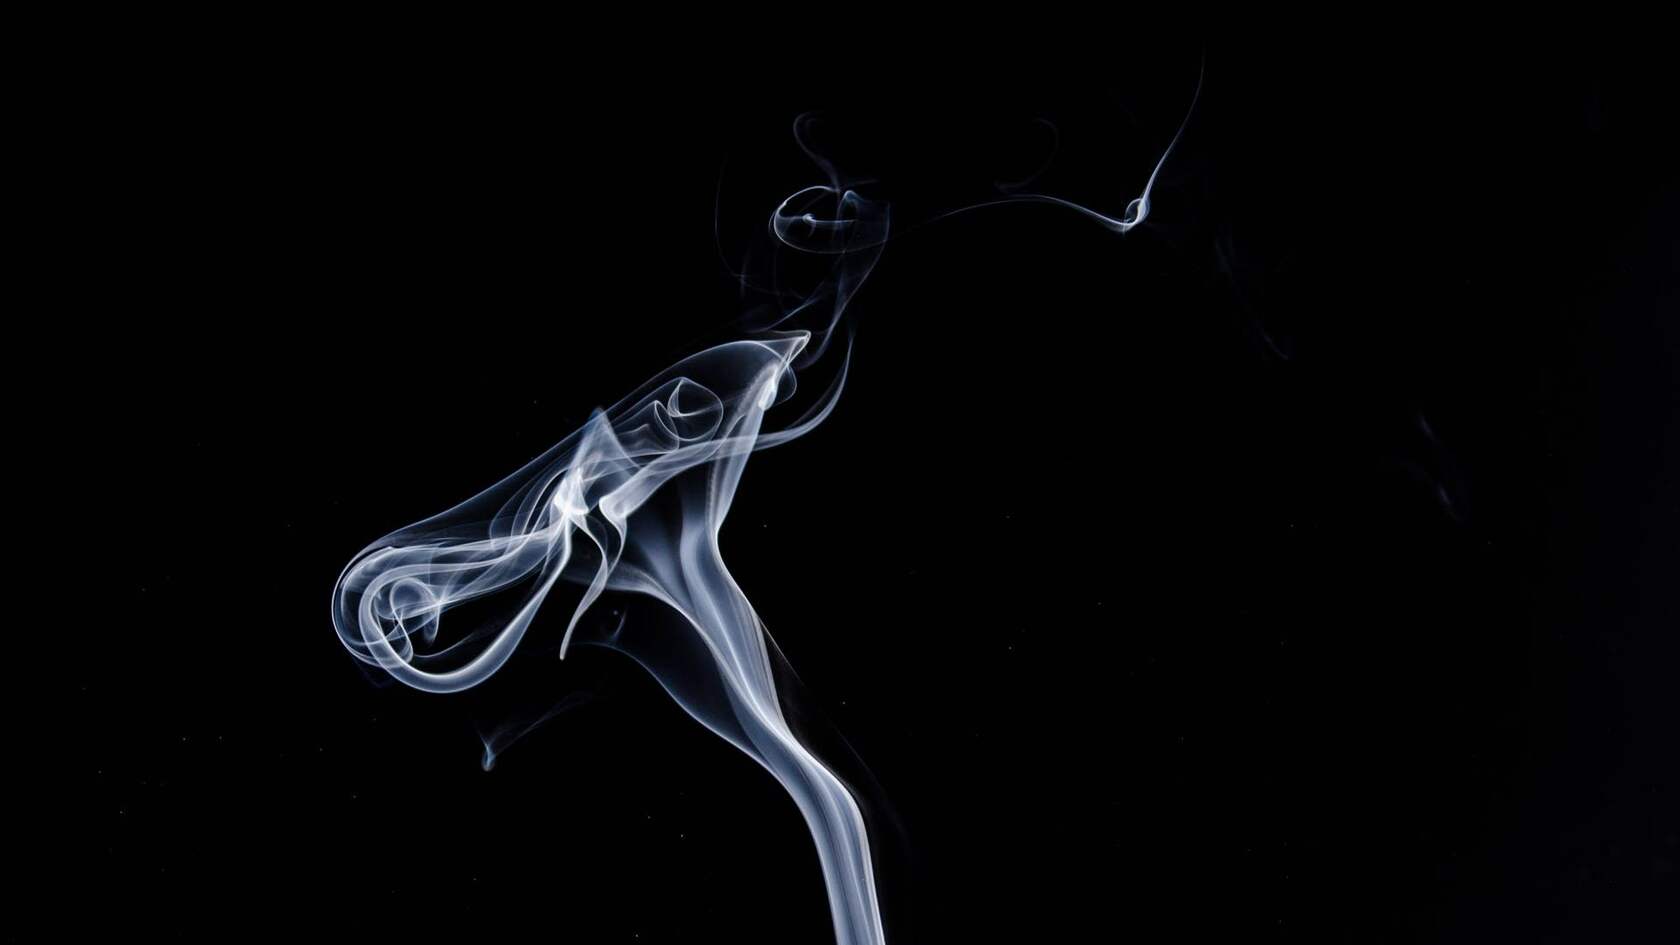 烟 烟雾 袅绕 黑色背景 简约烟雾艺术摄影壁纸图片套图6